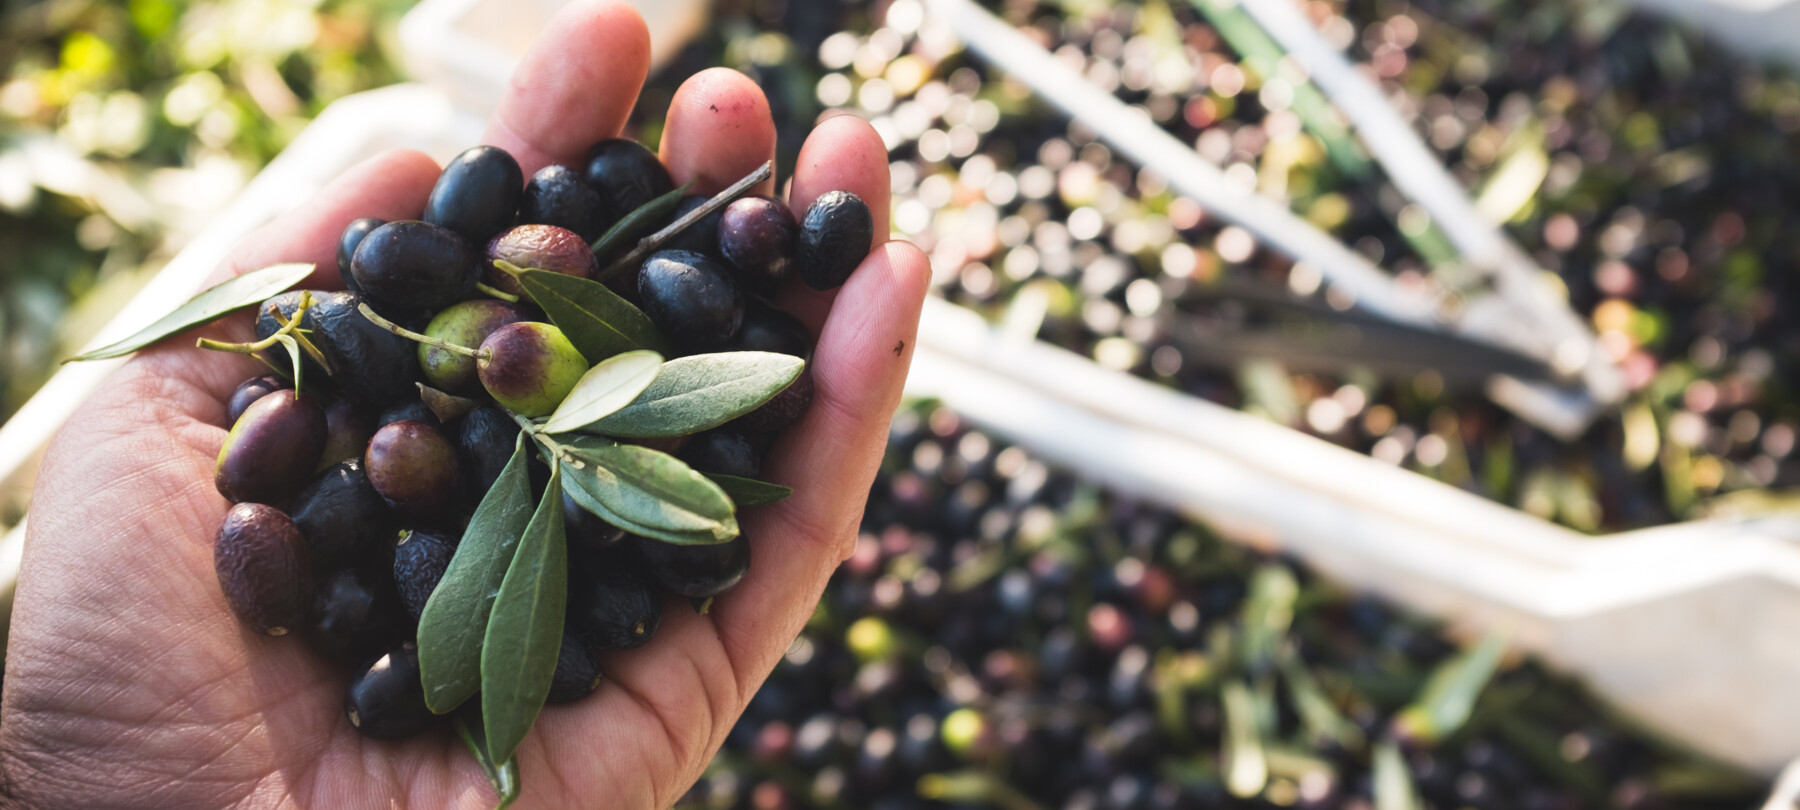 Extra virgin olive oil from Garda in Trentino